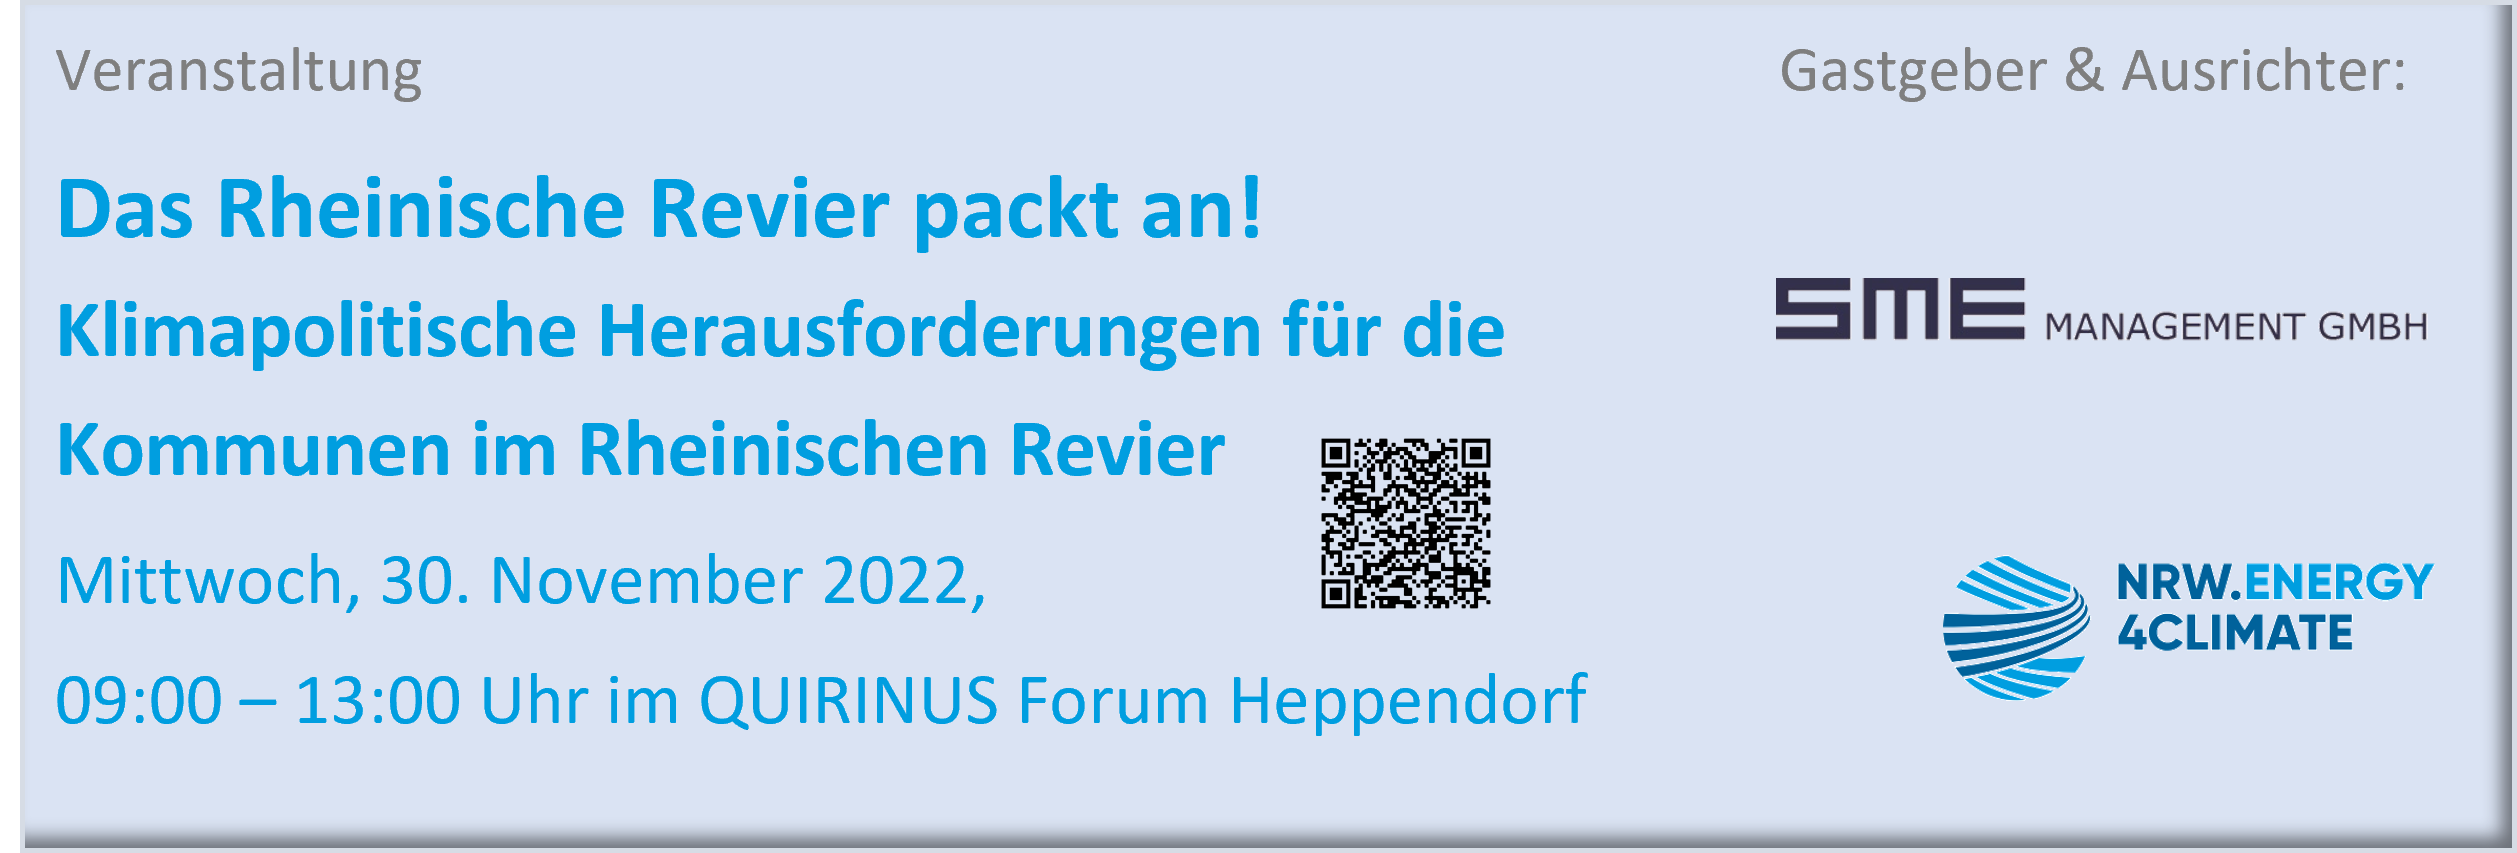 Das Rheinische Revier packt an! 30.11.2022